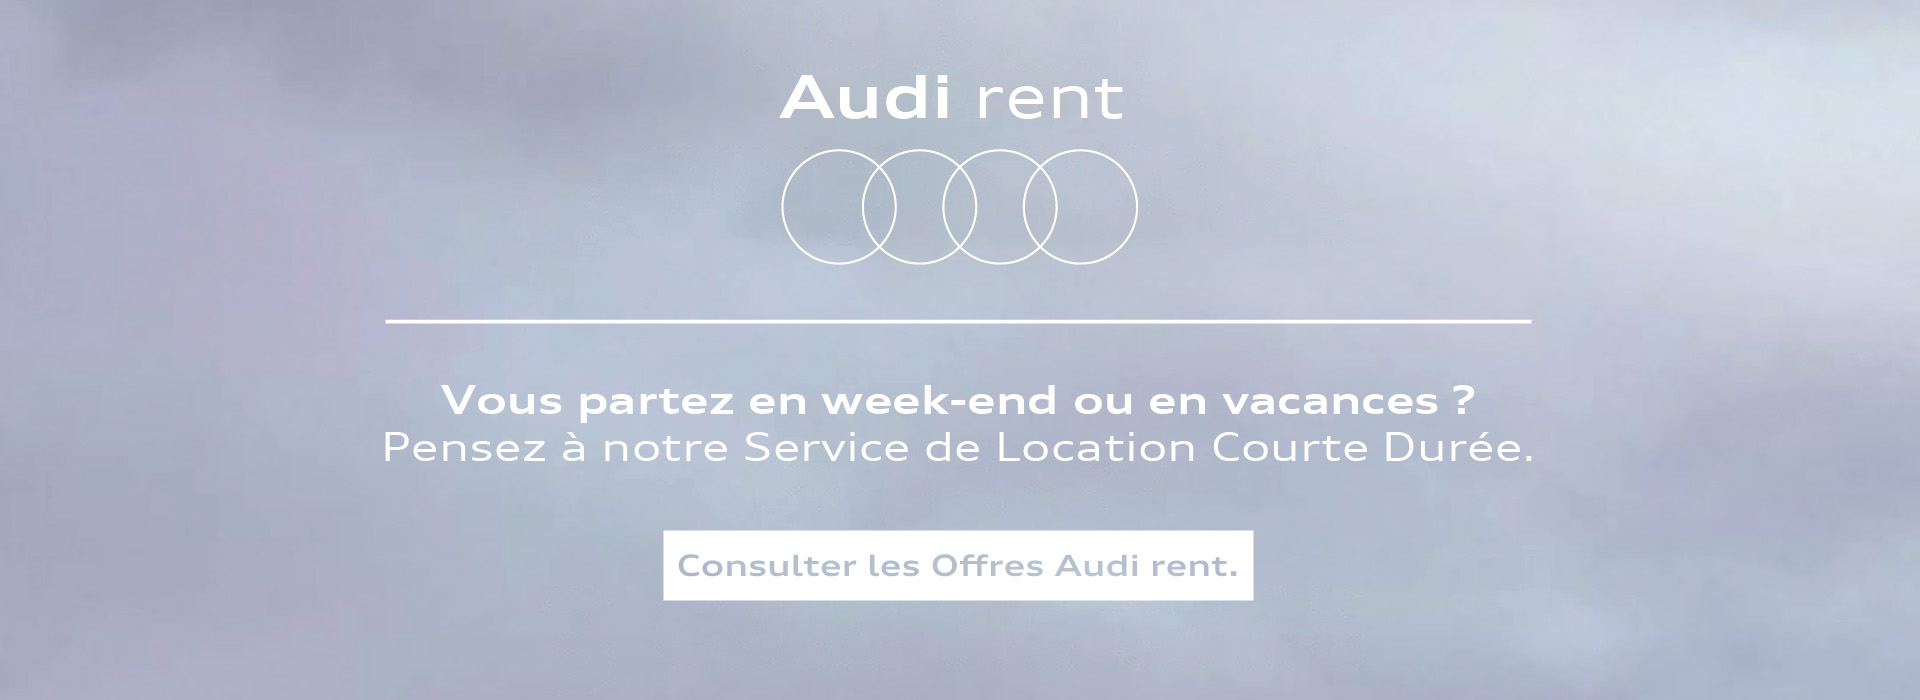 Offres_Audi rent